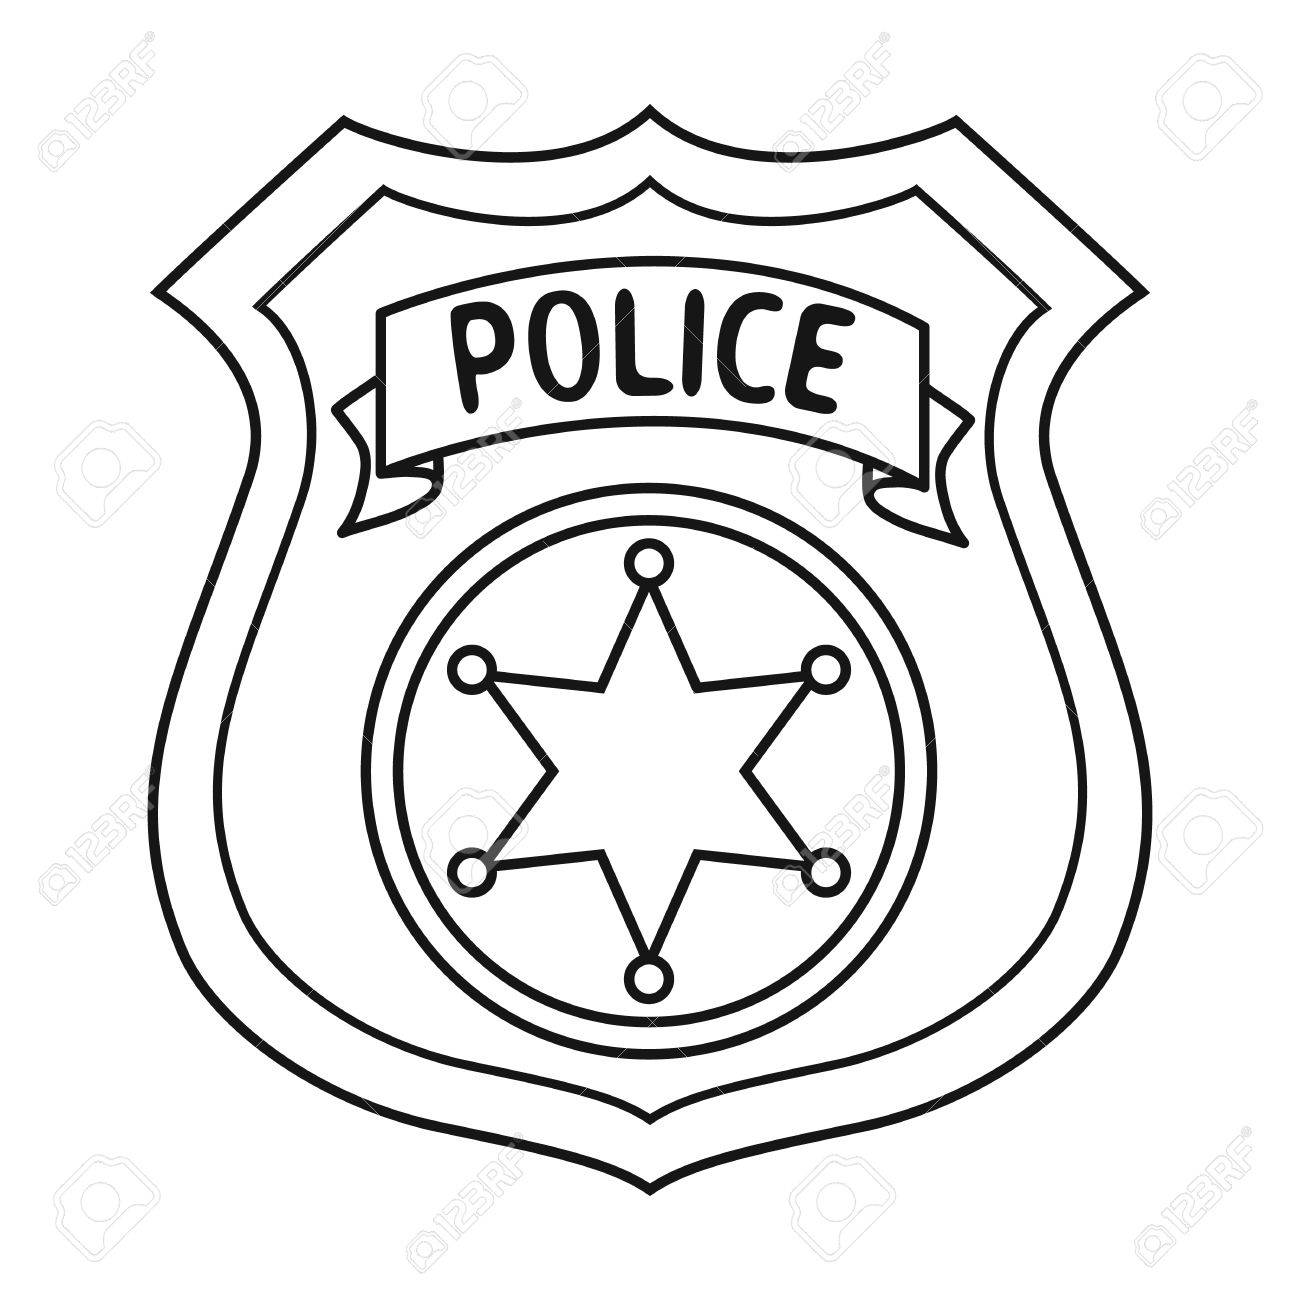 Printable police badge.